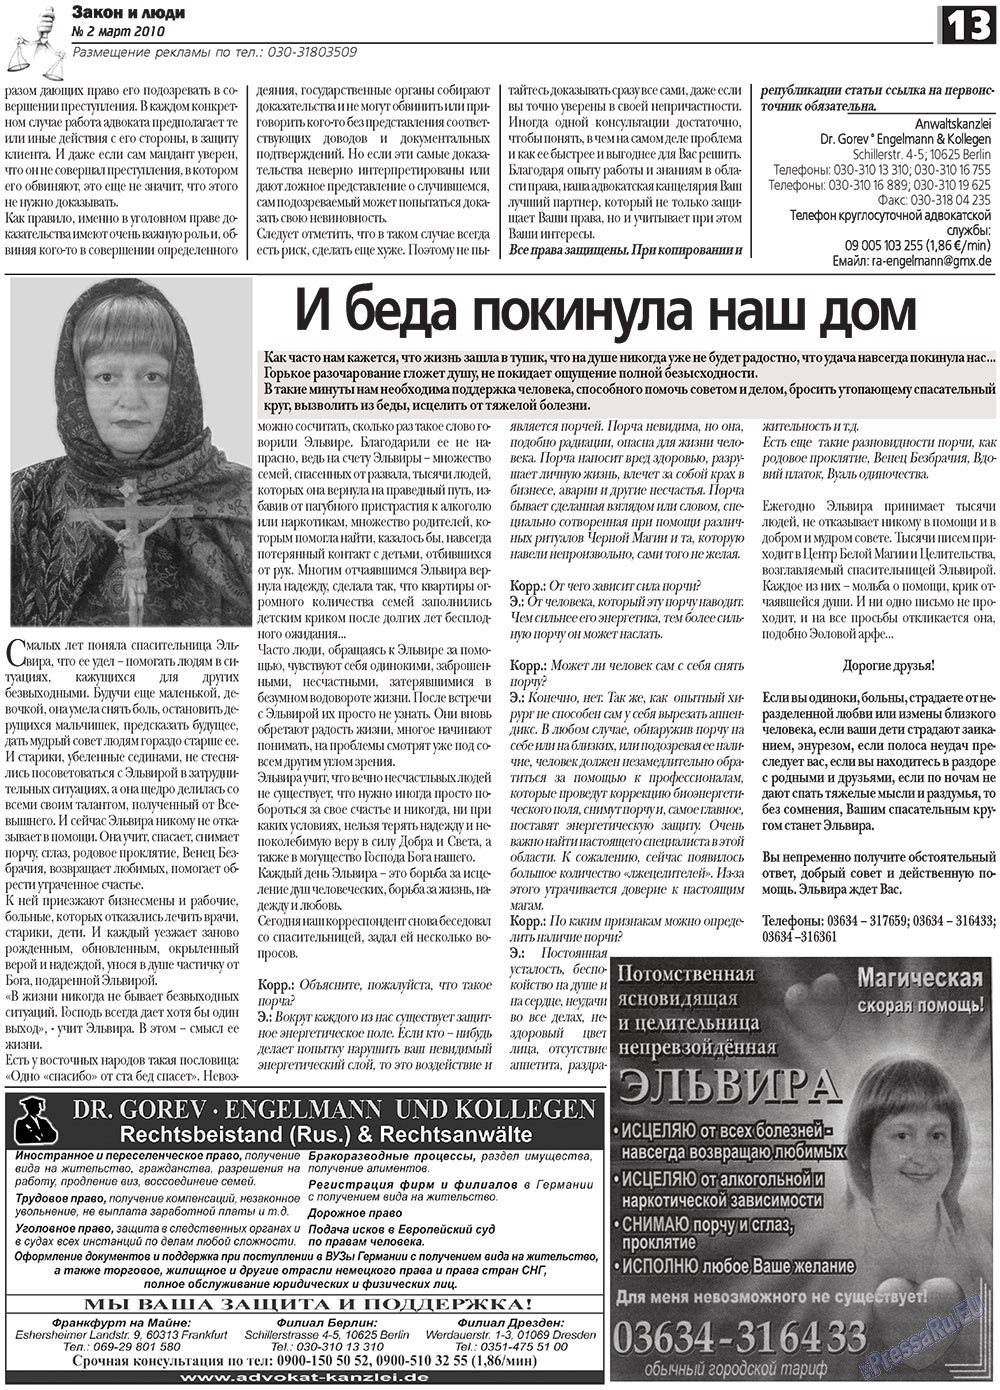 Закон и люди, газета. 2010 №2 стр.13